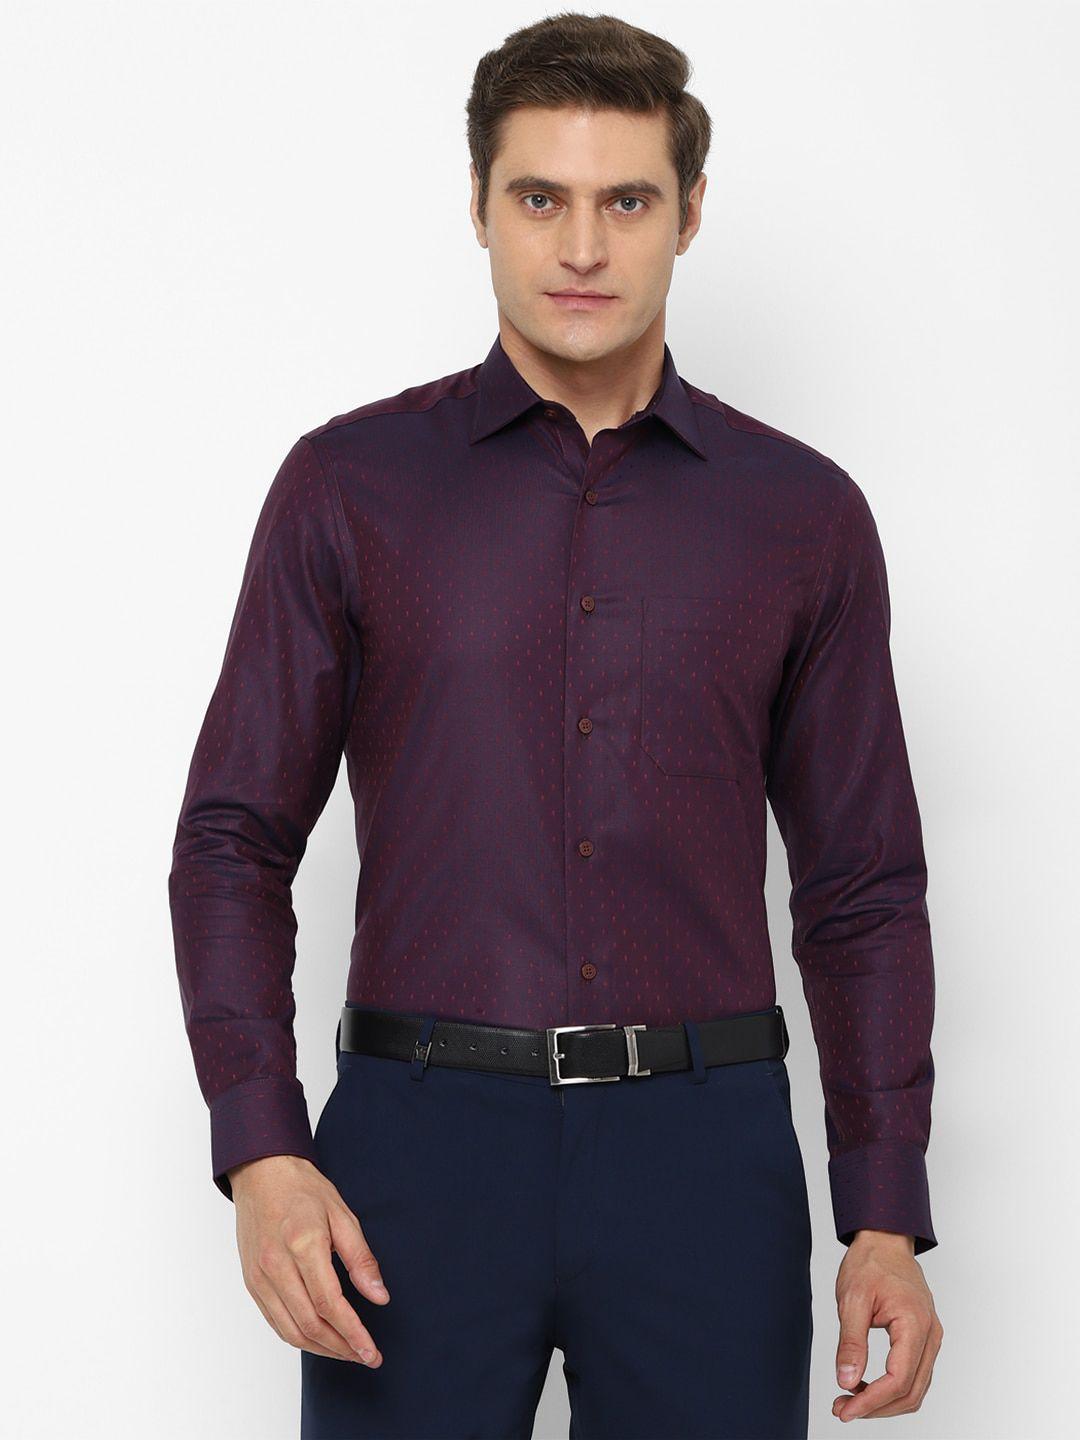 louis philippe men purple cotton formal shirt